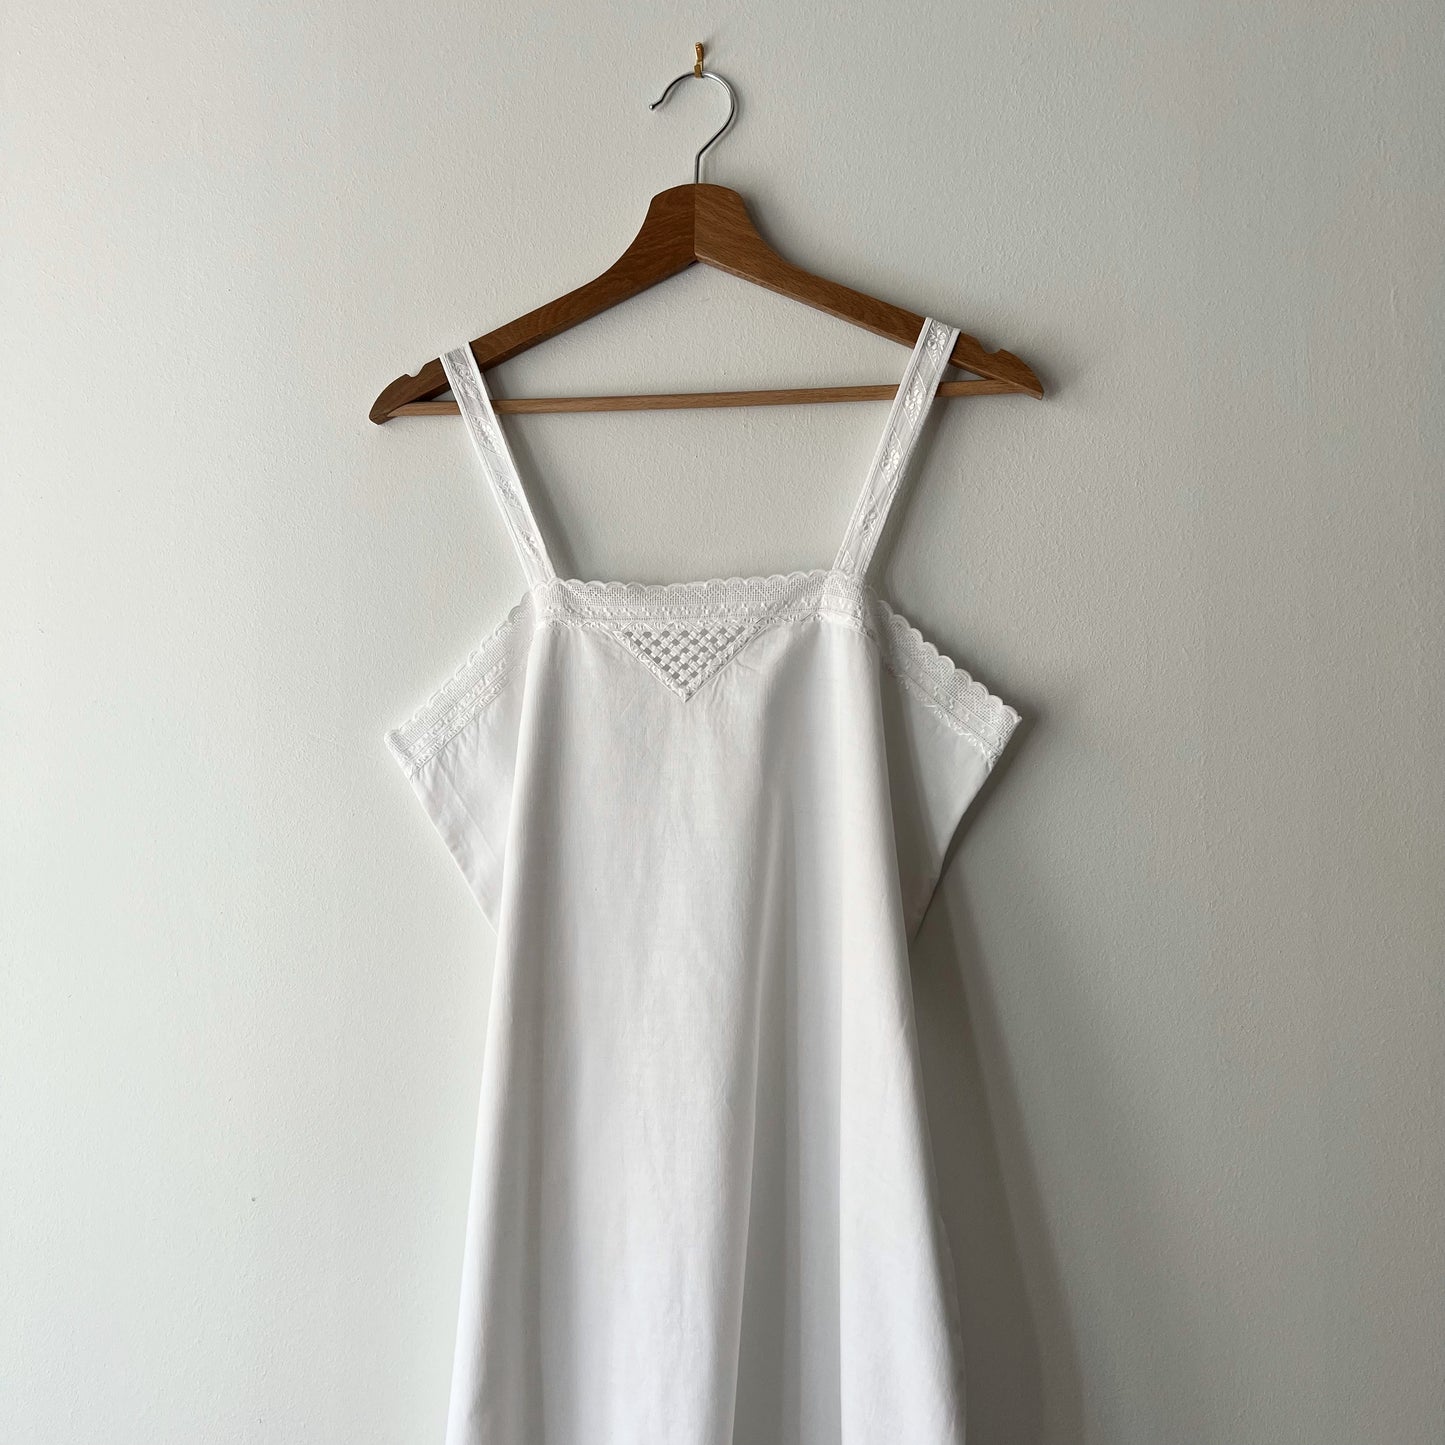 【Vintage】France 1930s Cotton Camisole Dress